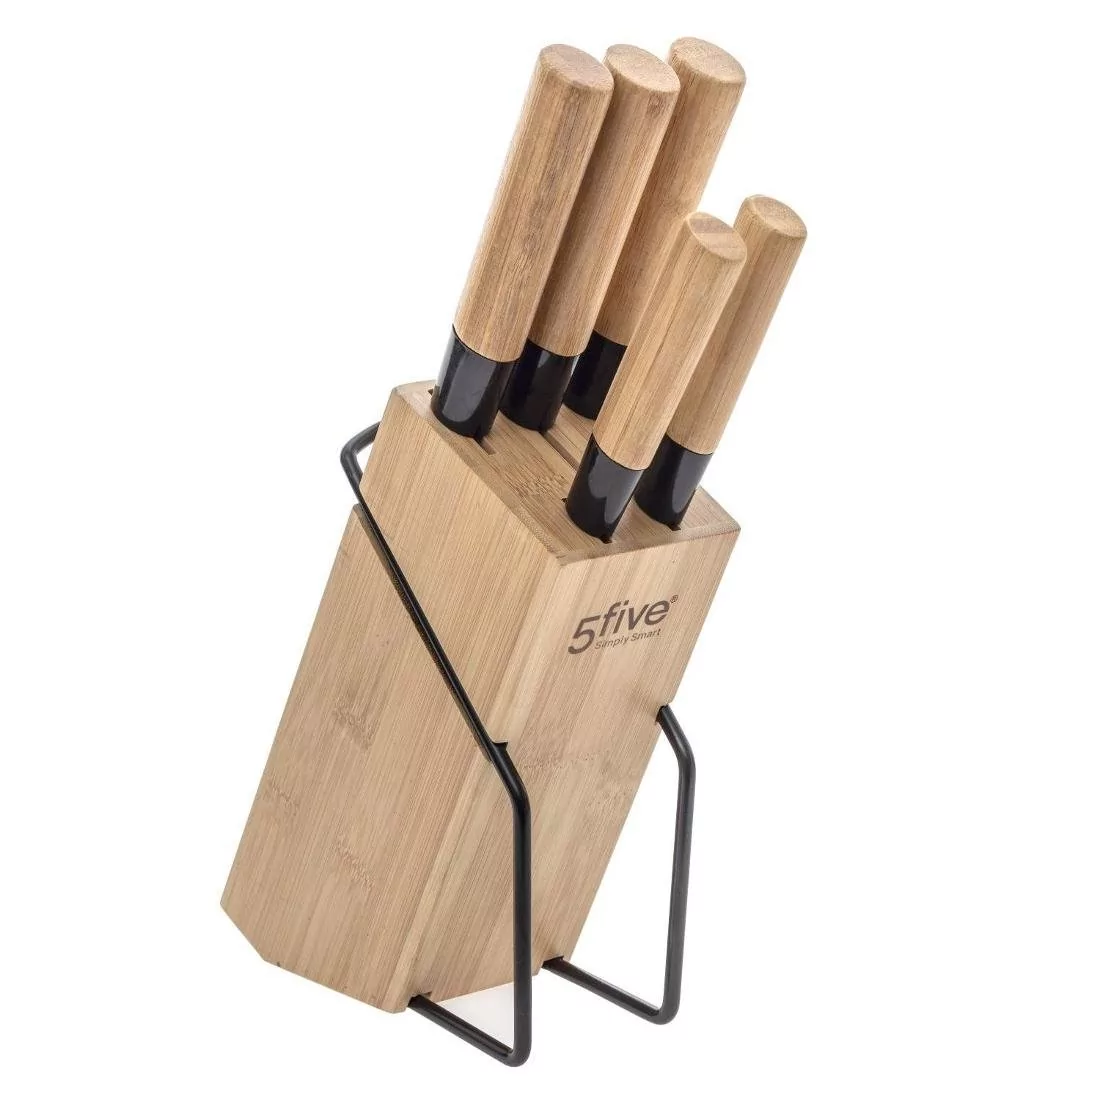 5five Simply Smart Zestaw noży kuchennych na stojaku z bambusa 5 noży 151357